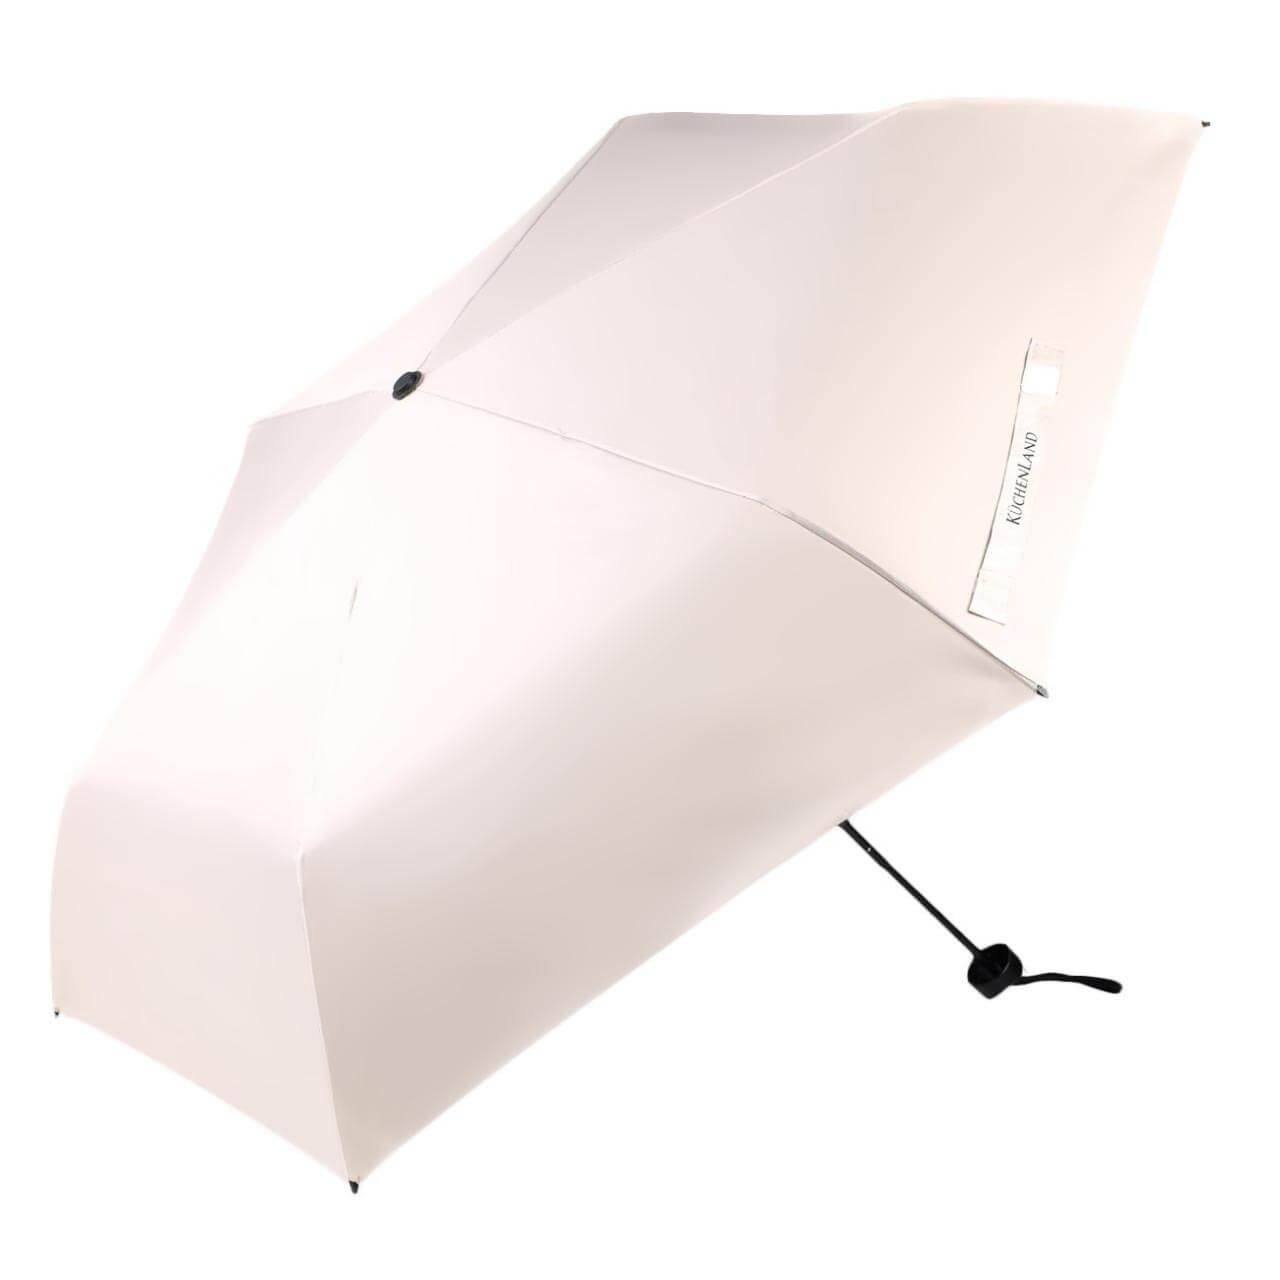 Зонт, 52 см, складной, двусторонний, эпонж, бежево-черный, Rainy day двусторонний водосгон zizay